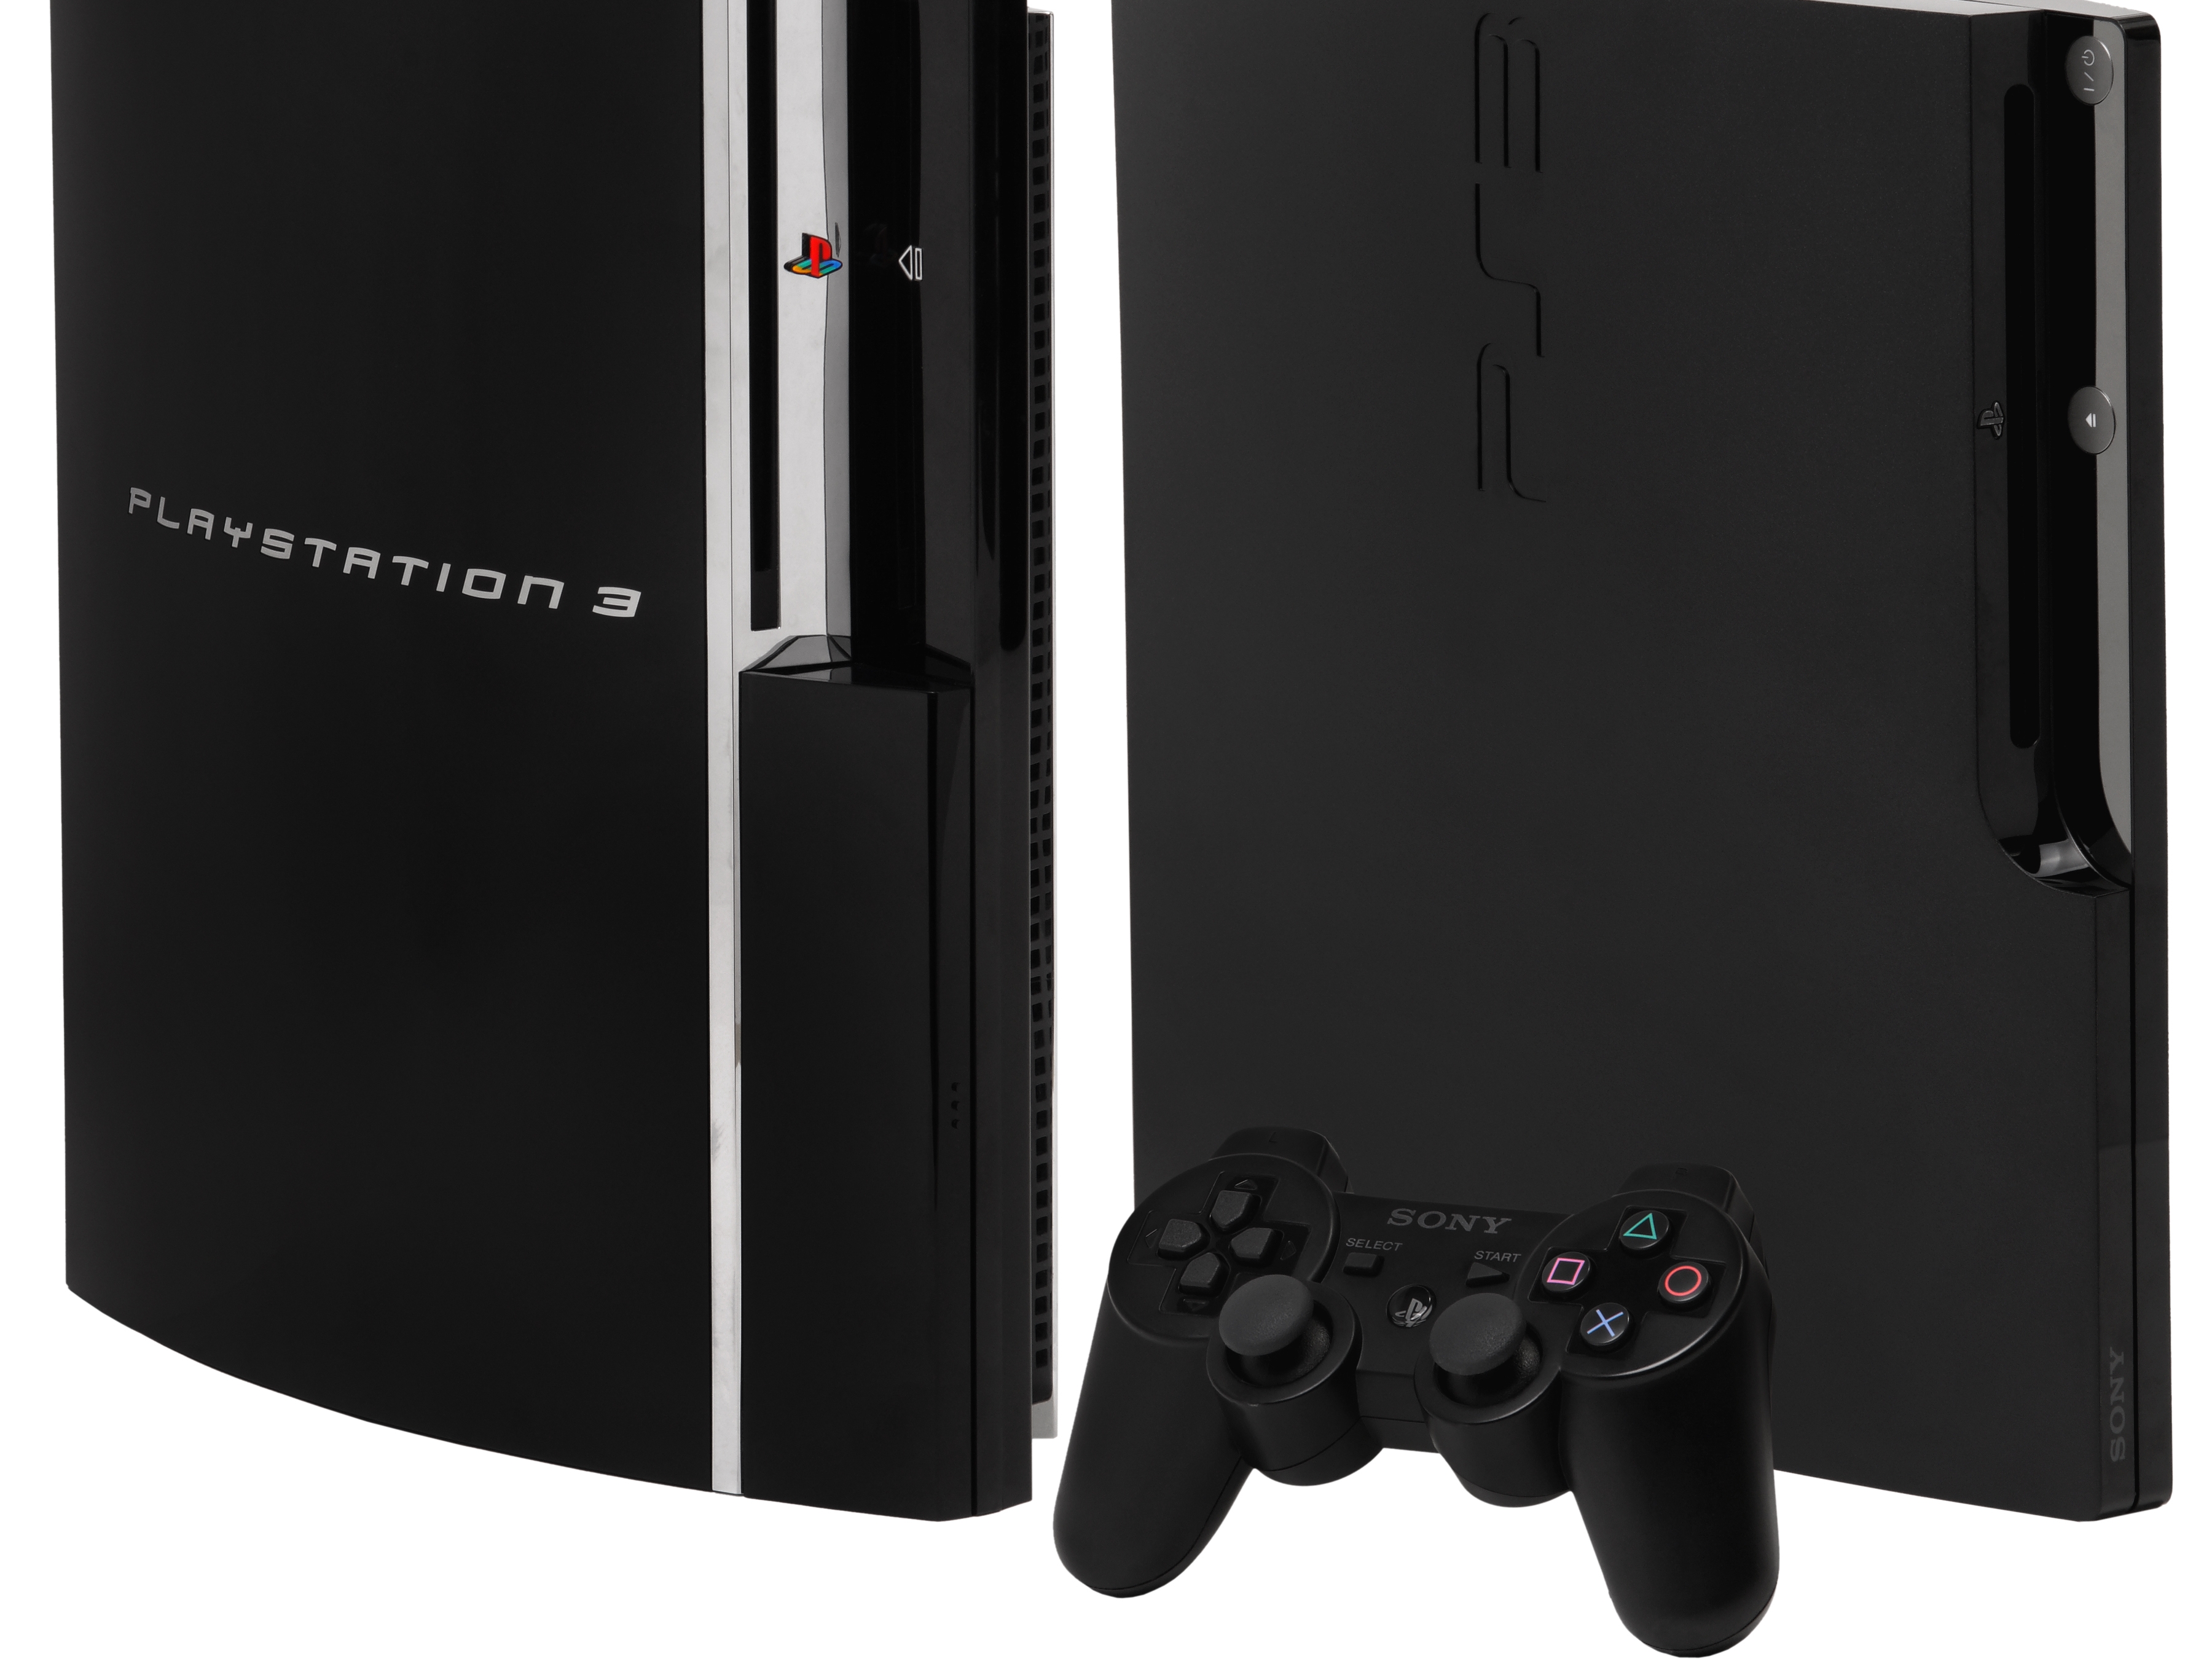 Популярные заставки и фоны Playstation 3 на компьютер